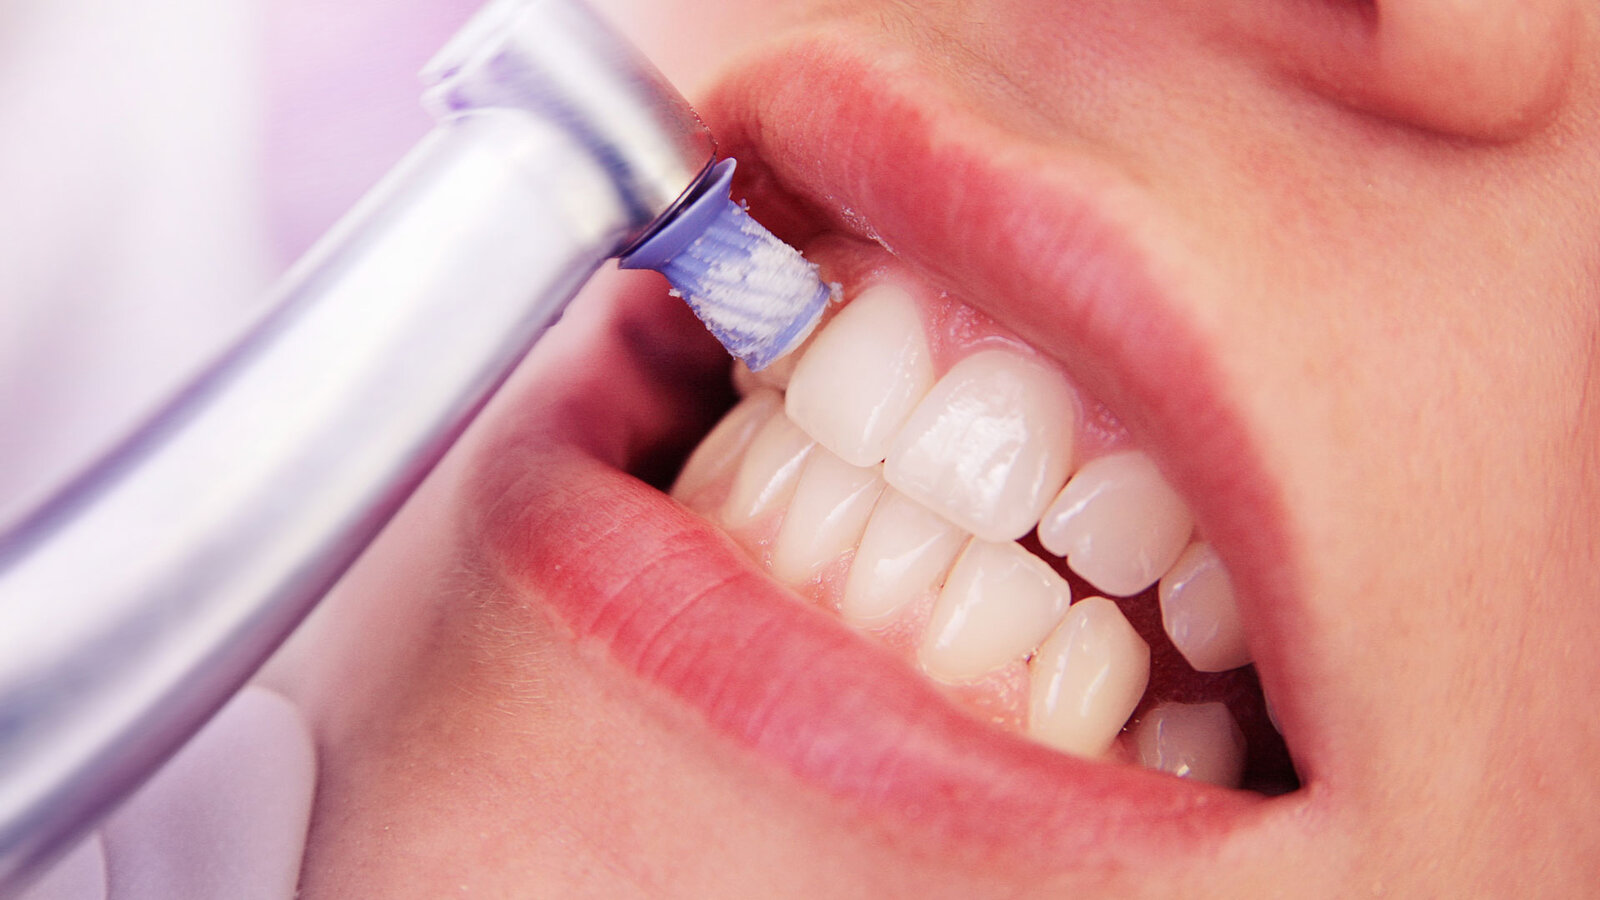 Professionelle Zahnreinigung – Zähne einer Frau werden poliert ©adobestock/picdog 